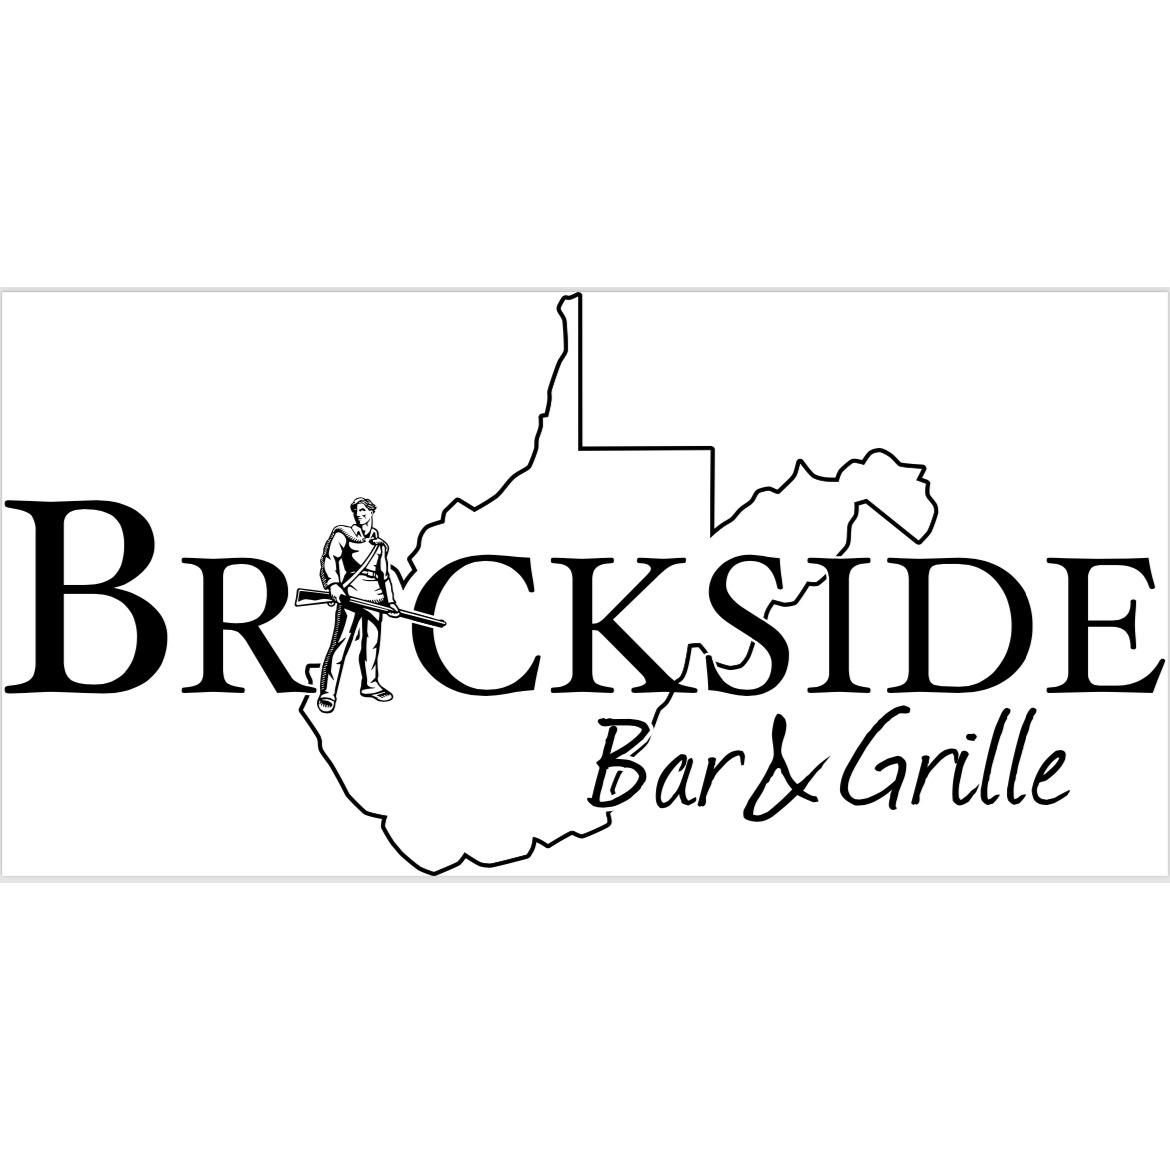 Brickside Bar & Grille Fairmont - Fairmont, WV 26554 - (304)534-8457 | ShowMeLocal.com